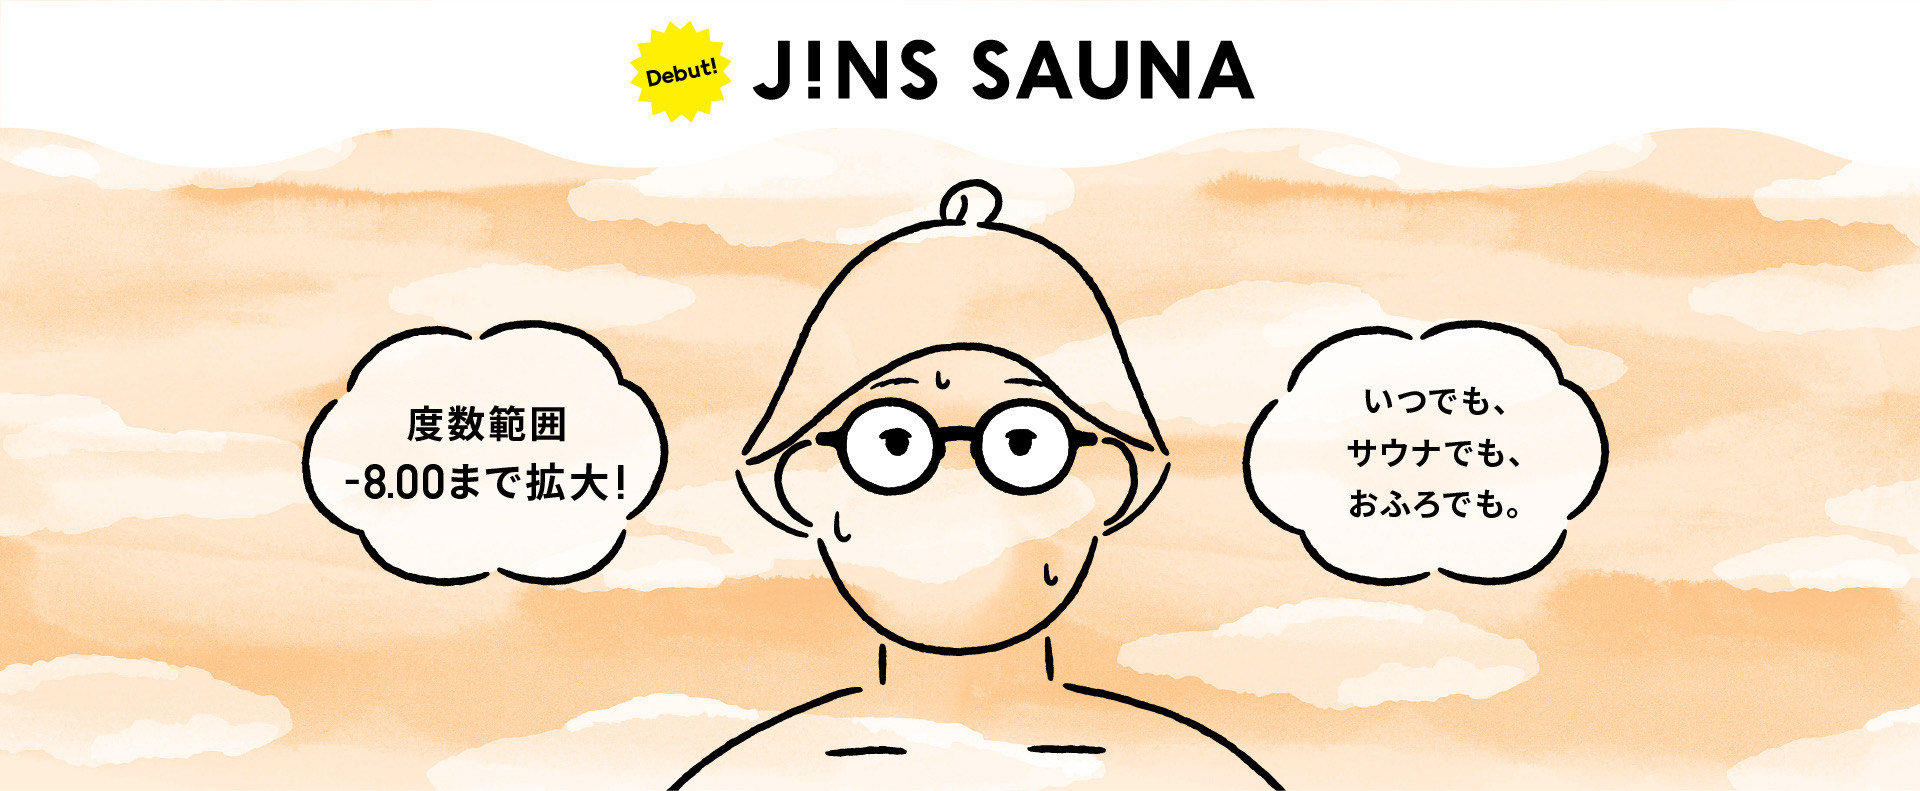 メガネ(めがね・眼鏡）のJINS『JINS SAUNA』